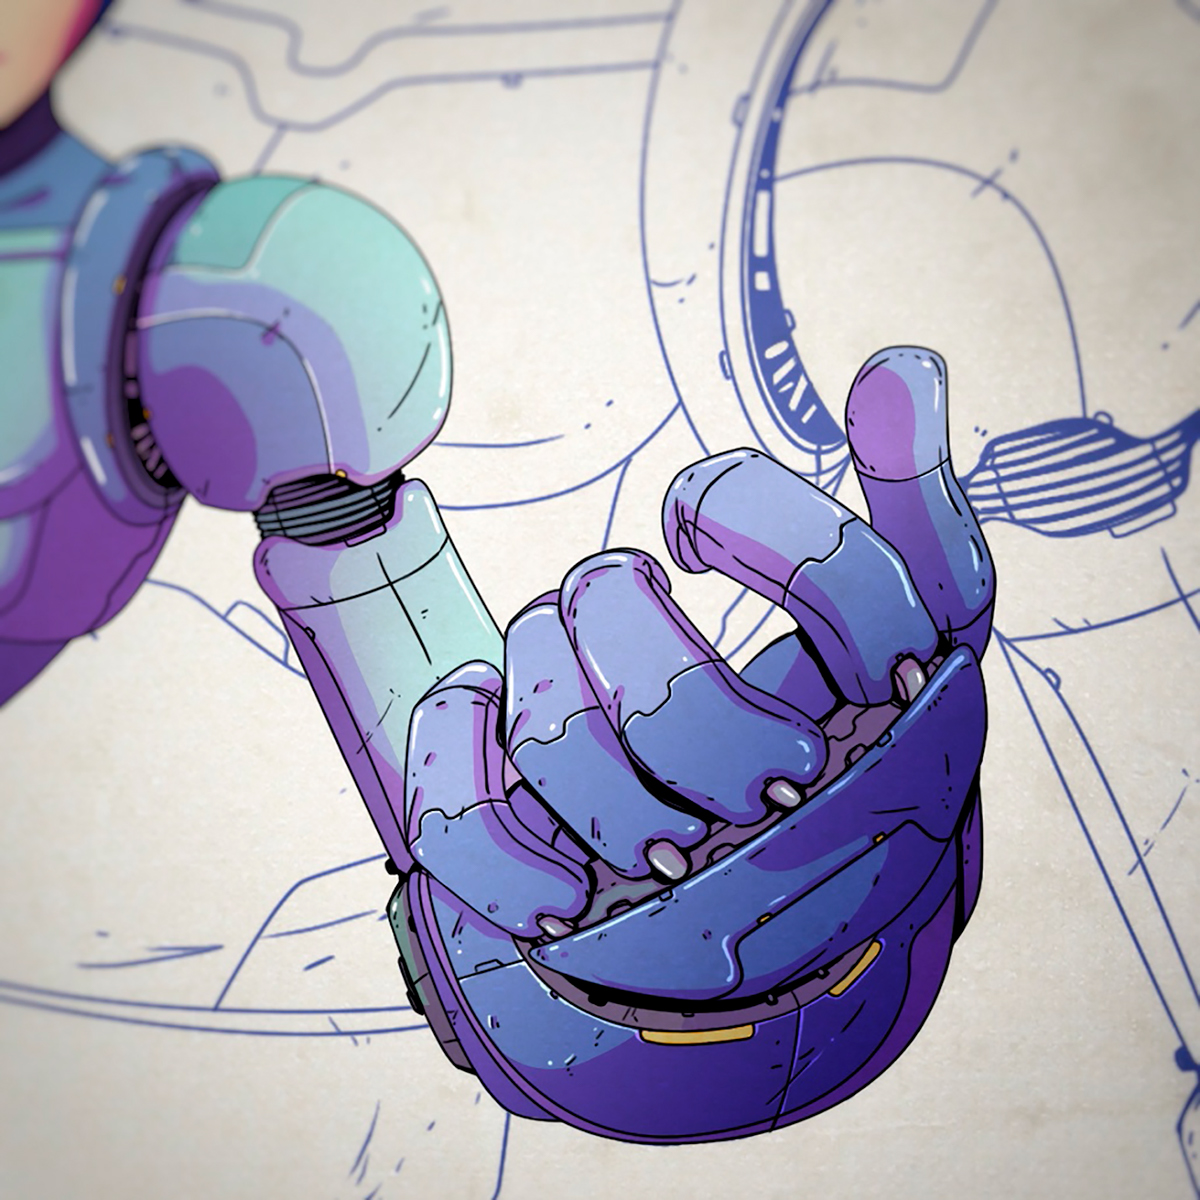 Mega Man rockman Classic snes capcom game redesign fanart robot android